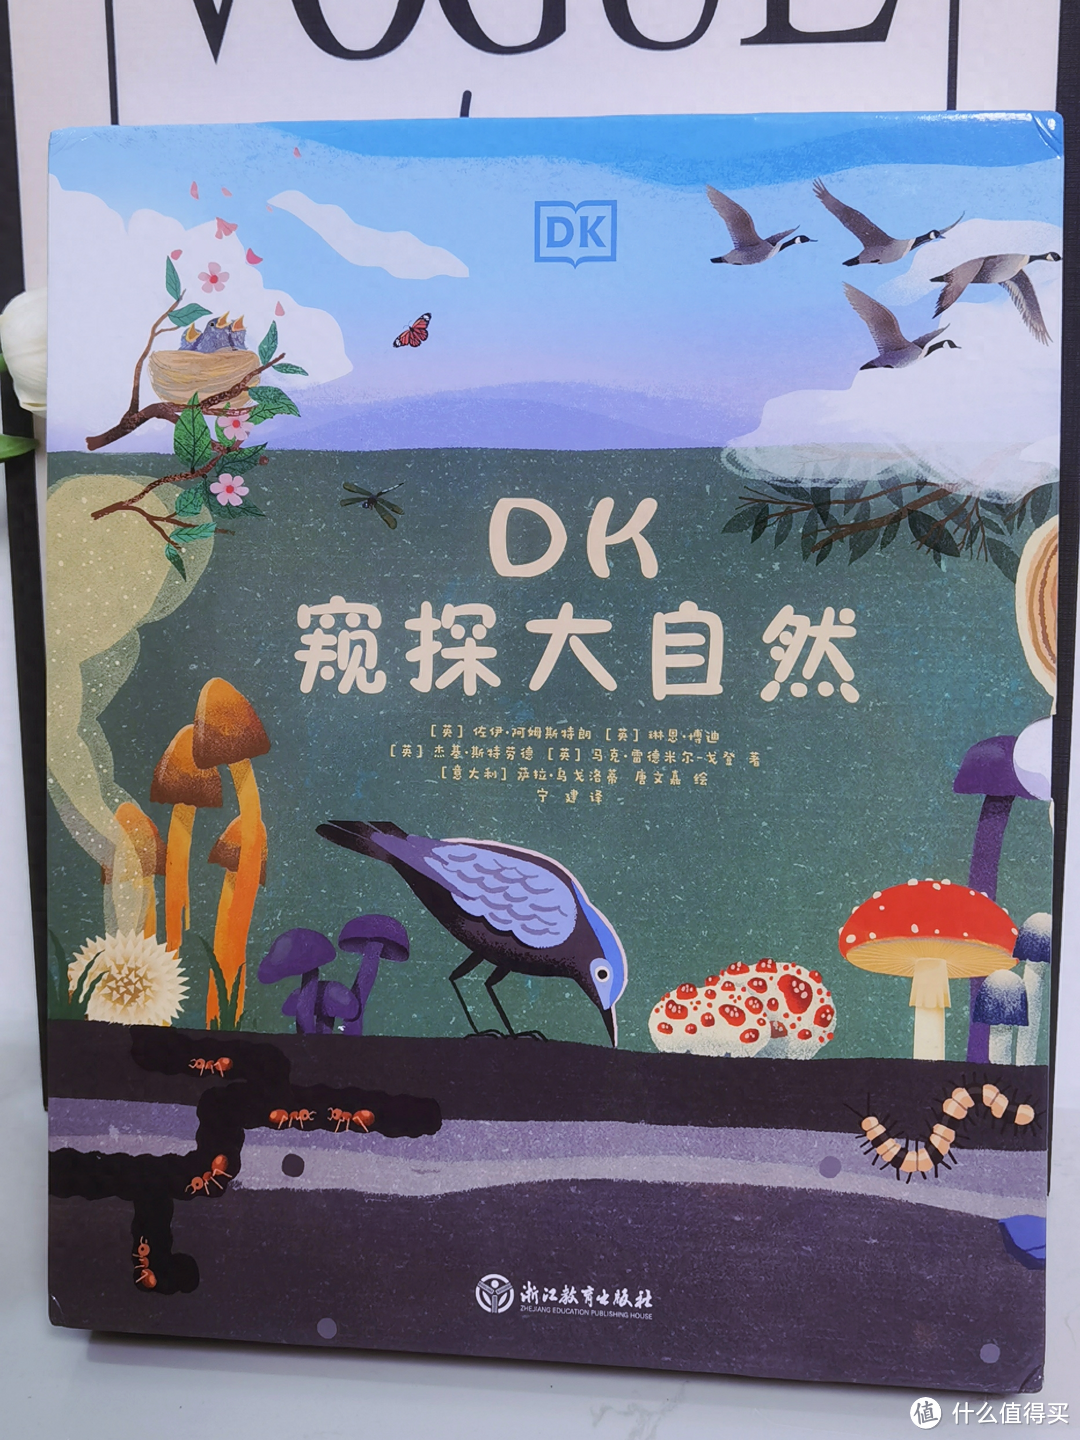 《DK窥探大自然》让孩子领略自然之美，激发求知欲和探索欲